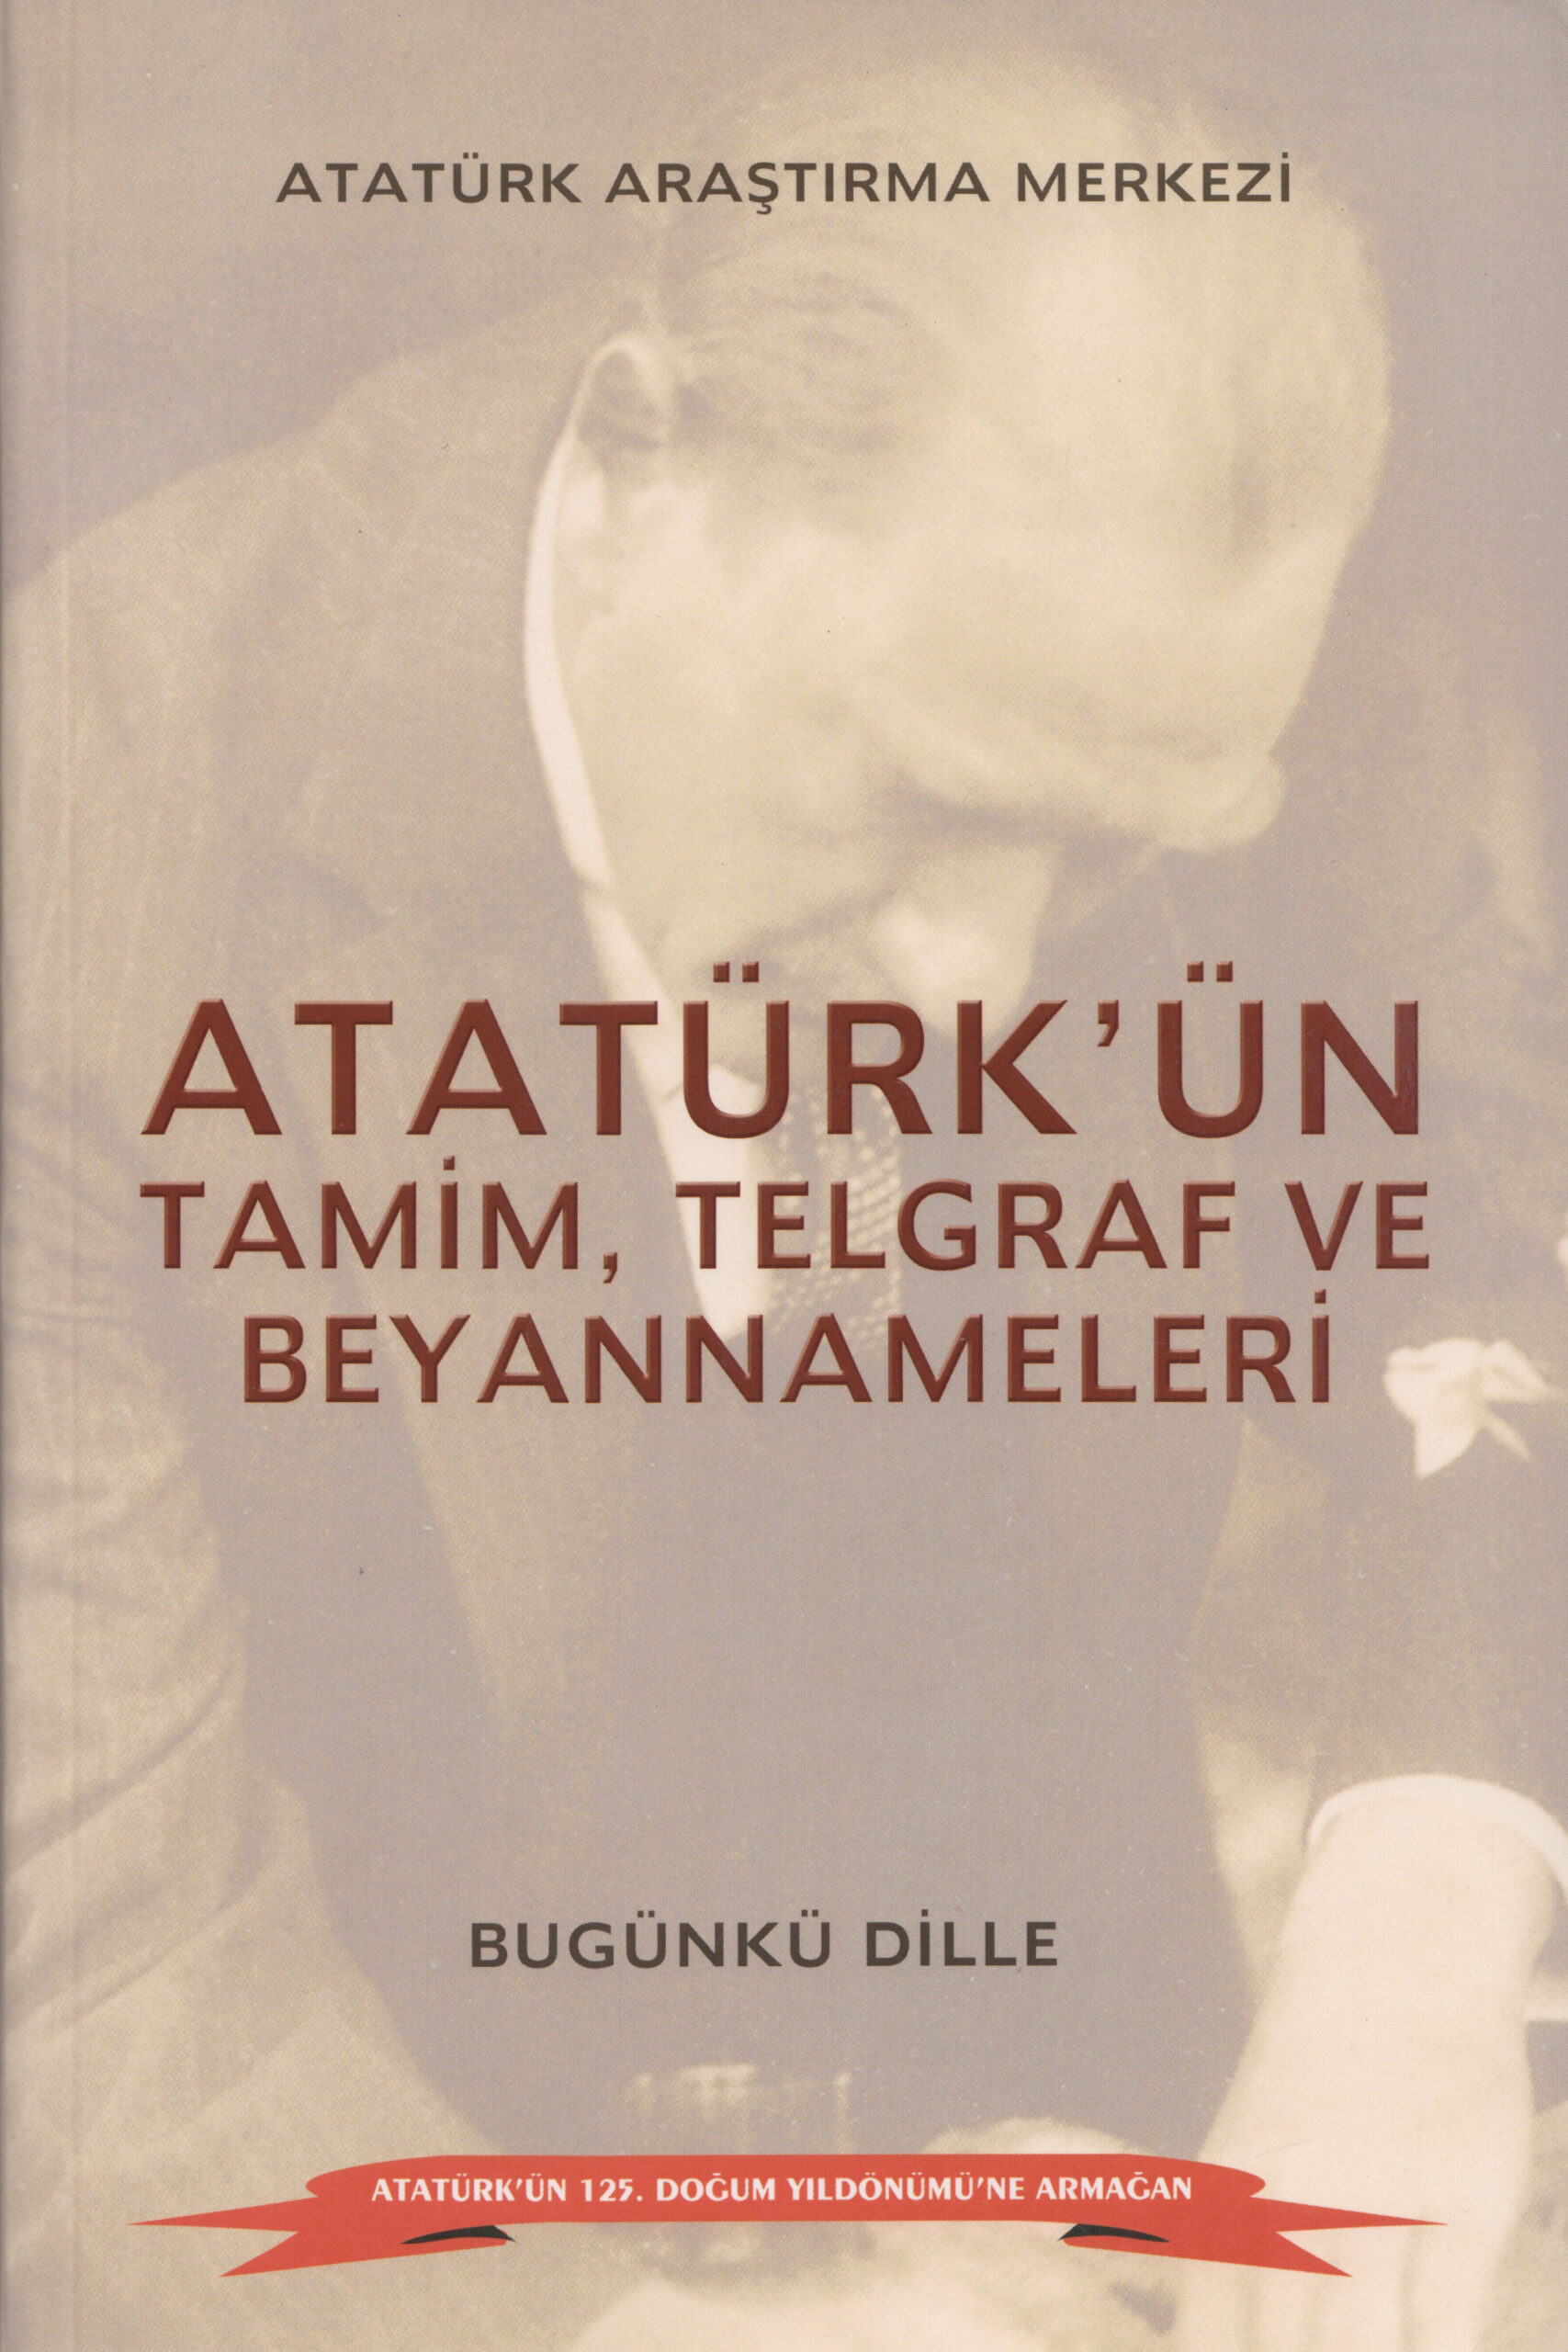 Bugünkü Dille Atatürk’ün Tamim, Telgraf ve Beyannameleri